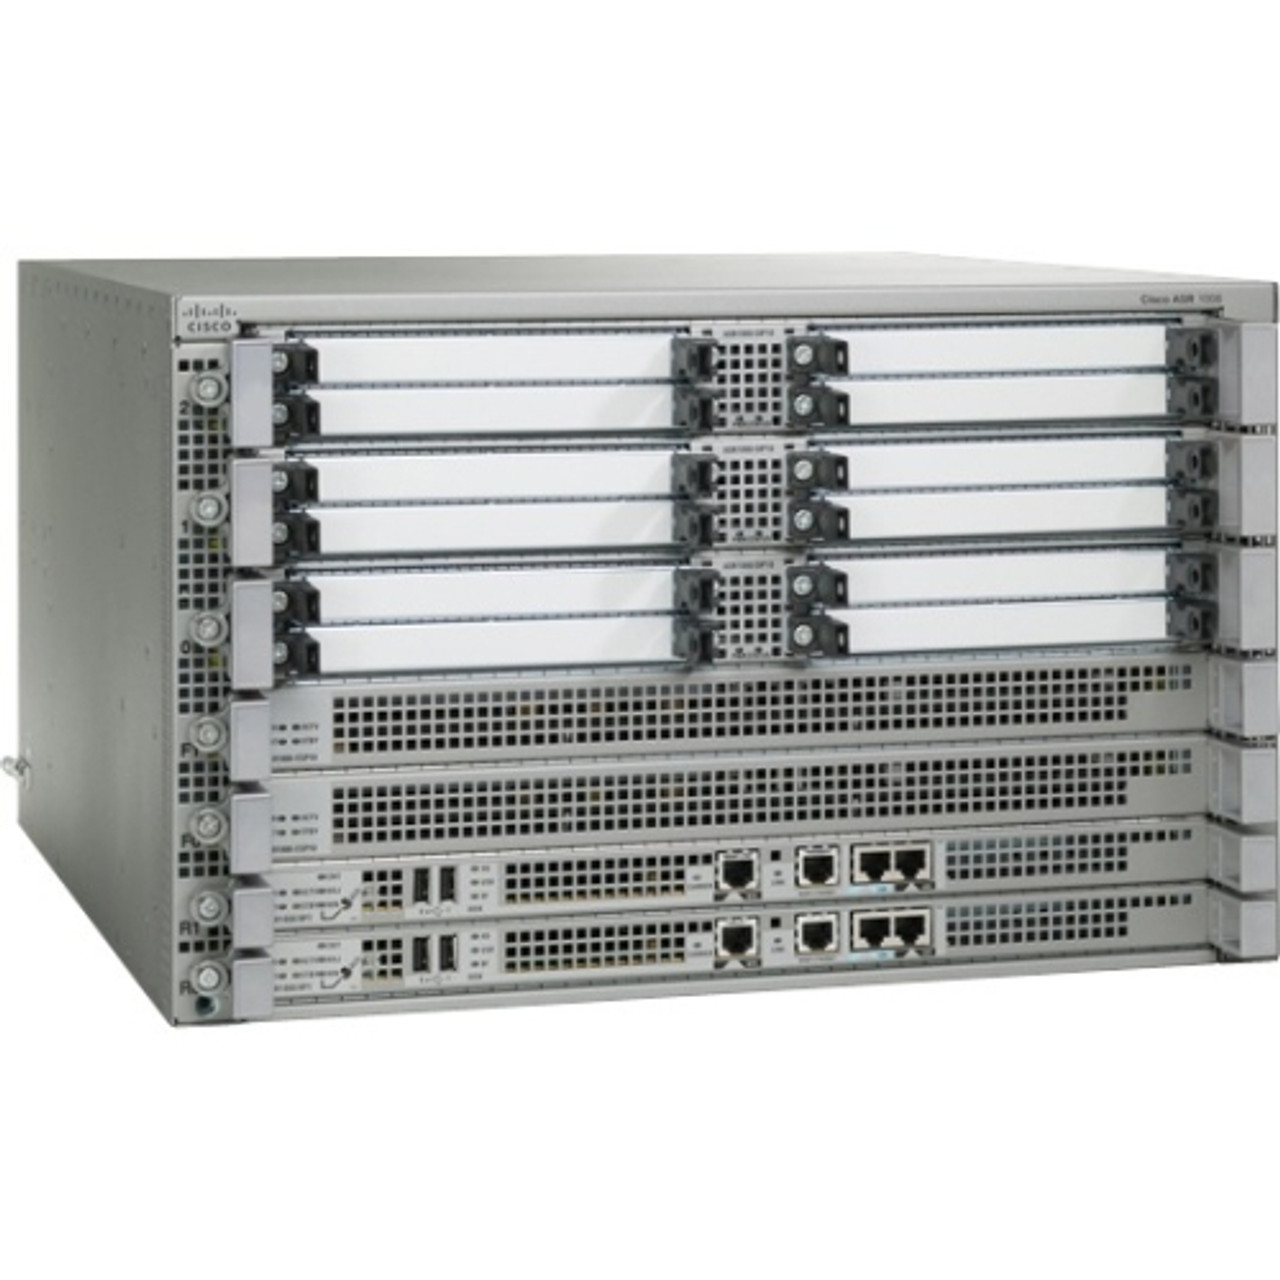 ASR1K6R2-40G-SECK9 Cisco ASR 1006 Router Chassis 19 Slots Rack-mountable (Refurbished)